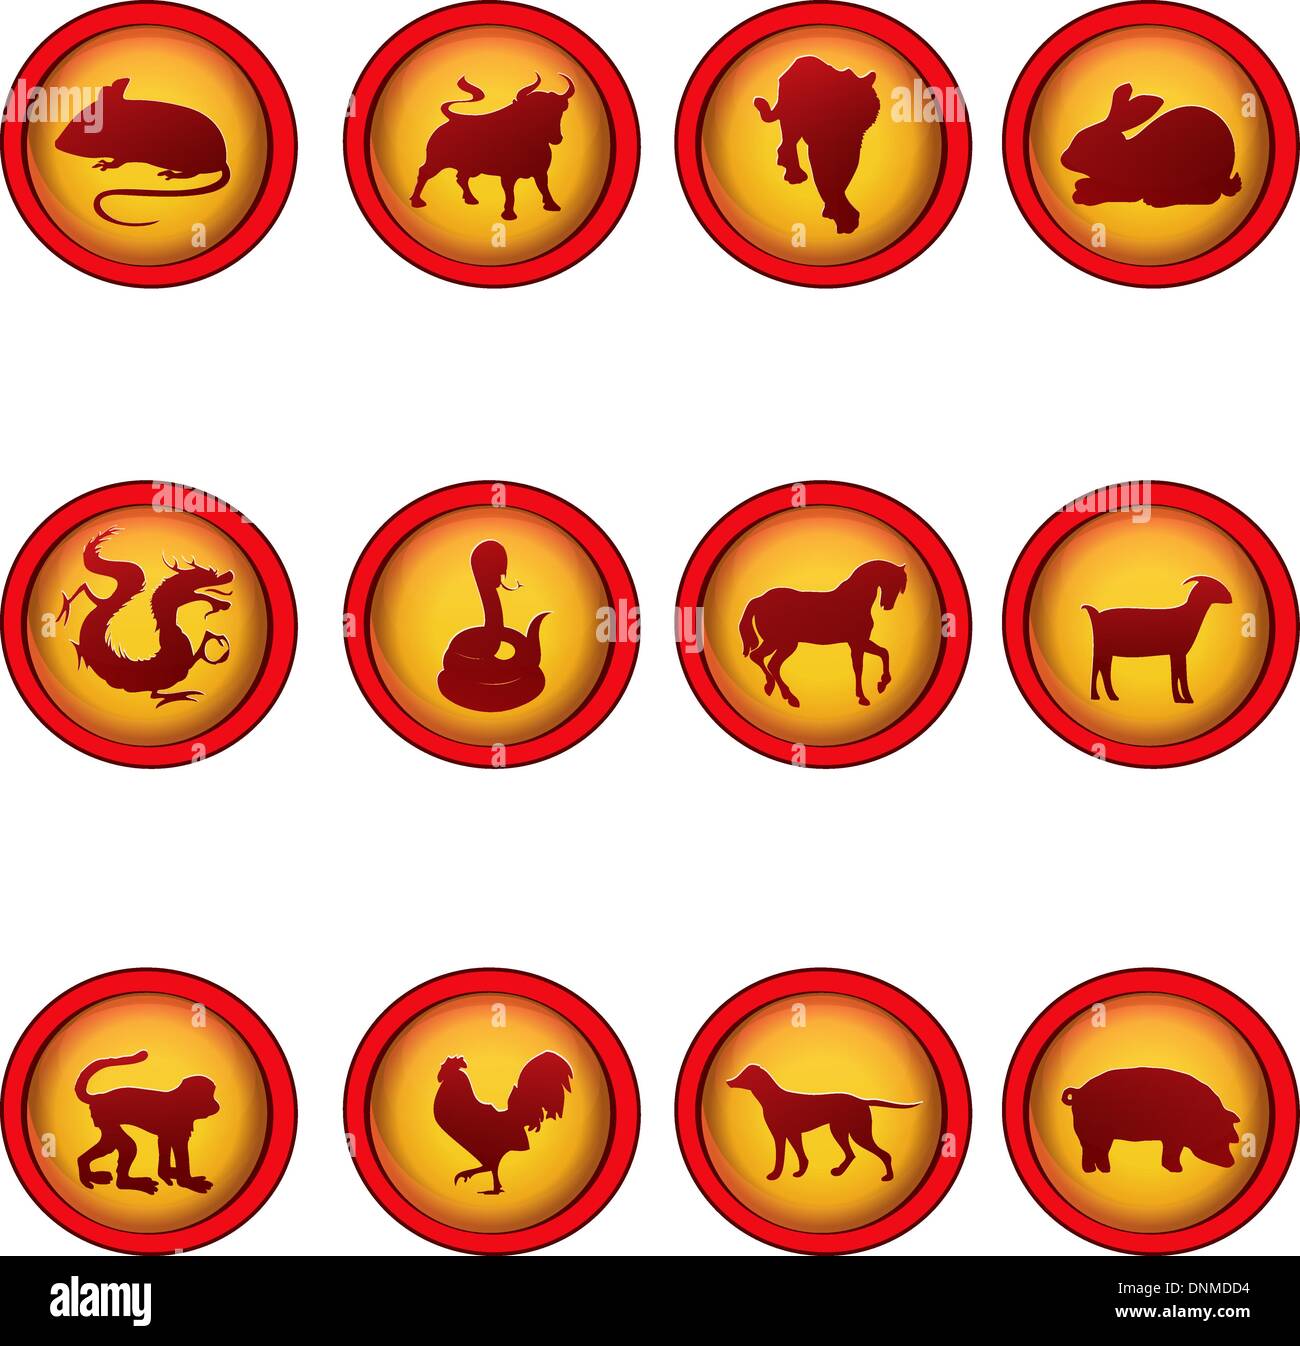 Un vecteur illustration de signes du zodiaque chinois Illustration de Vecteur